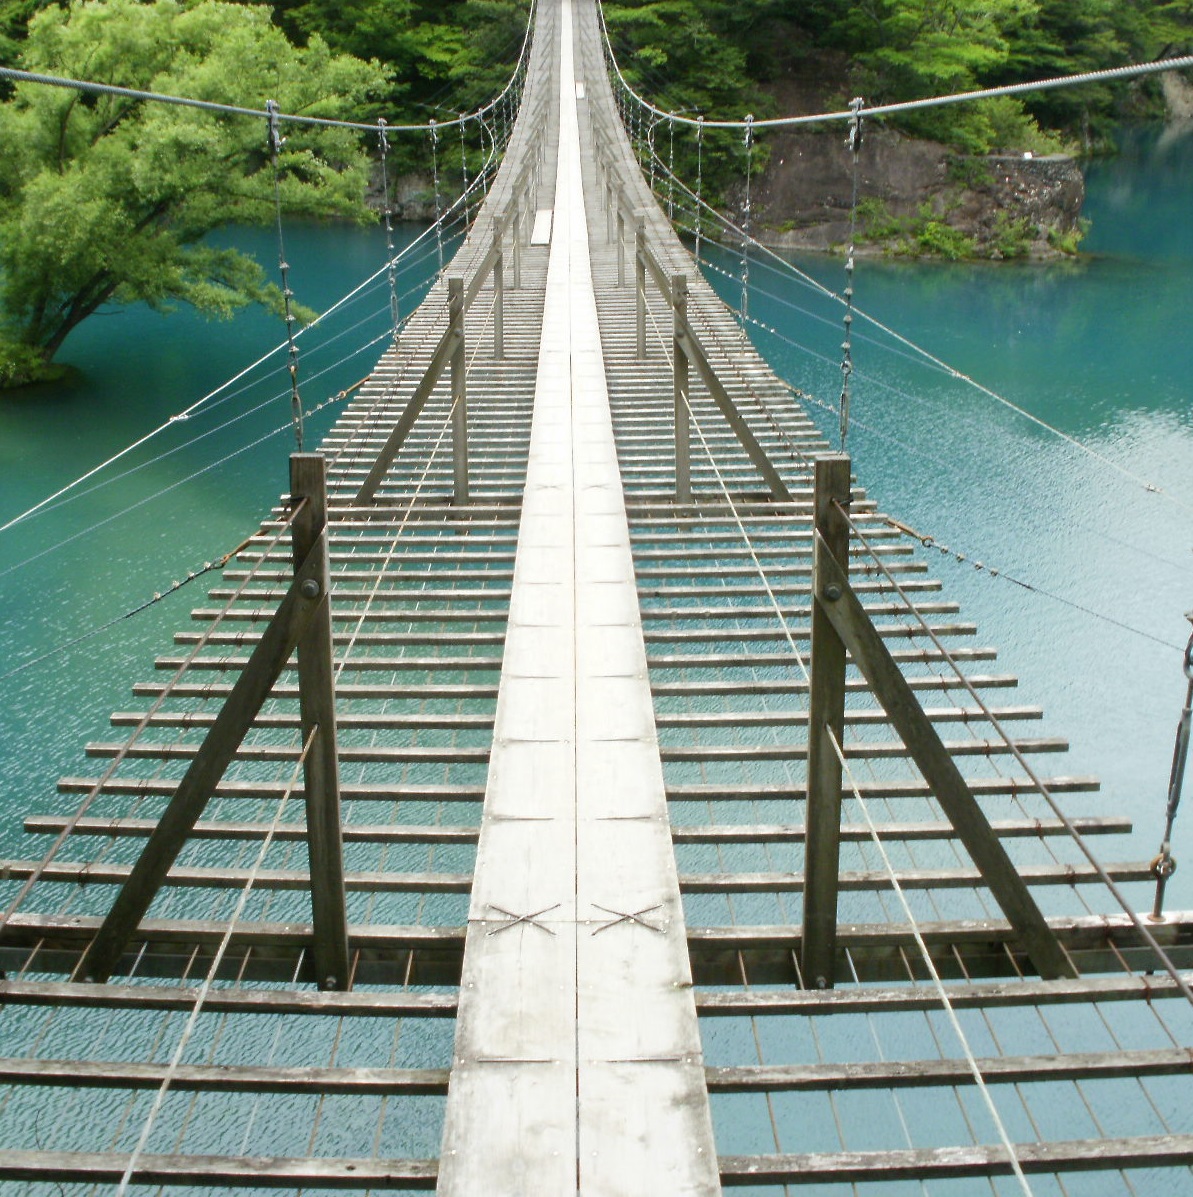 旅人yama 日本分割6周目 静岡県の奥地 寸又峡にある 夢の吊橋 です 大間ダム湖 無加工でこの色なのだからすごい 吸い込まれるようなブルーです そして吊橋はこの狭さでグラグラと揺れる これは吊橋効果 あなたも吊橋効果を狙うのです きっと